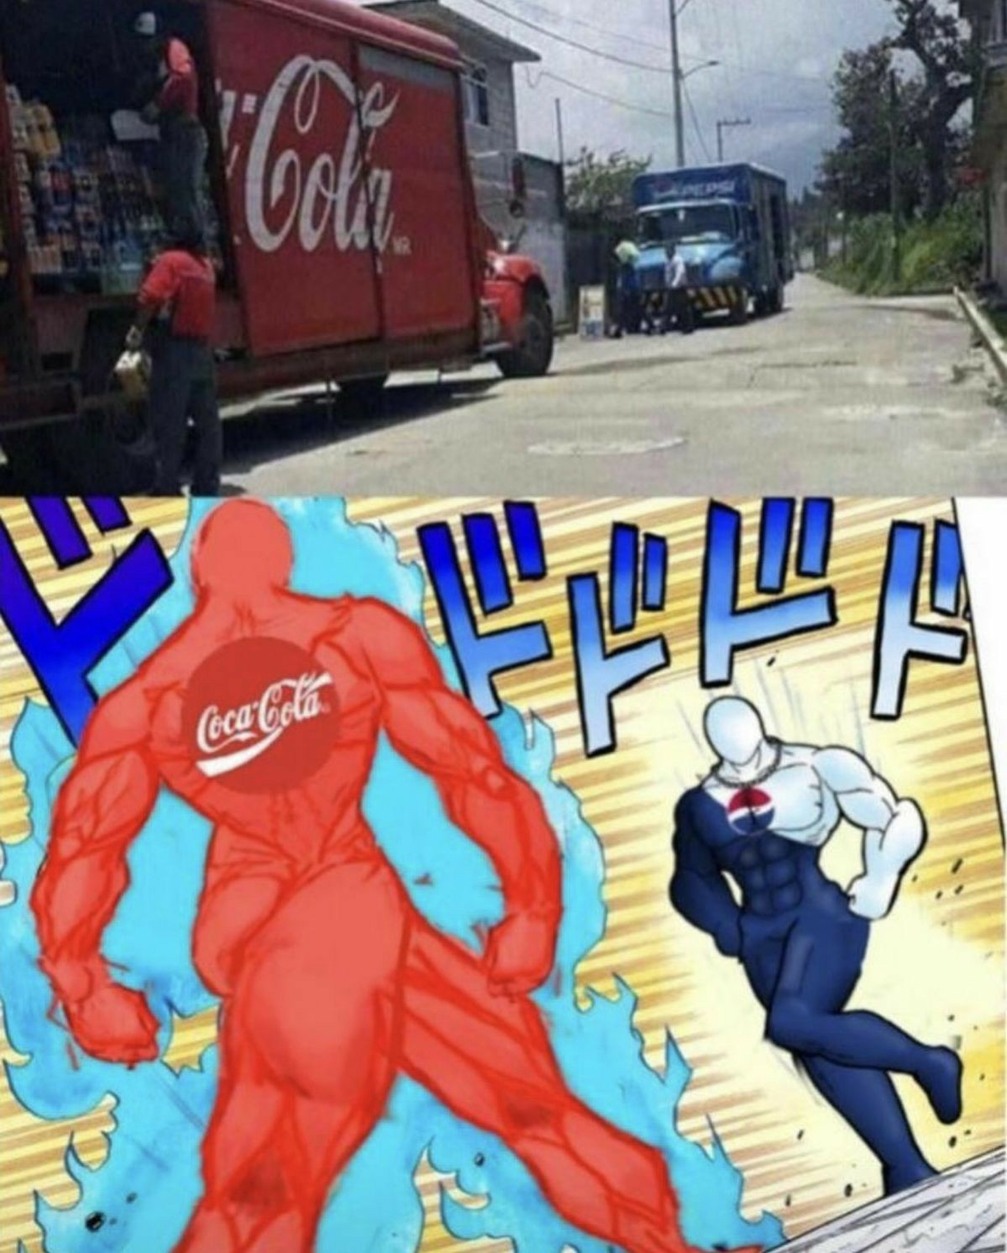 Coca cola vs pepsi - meme